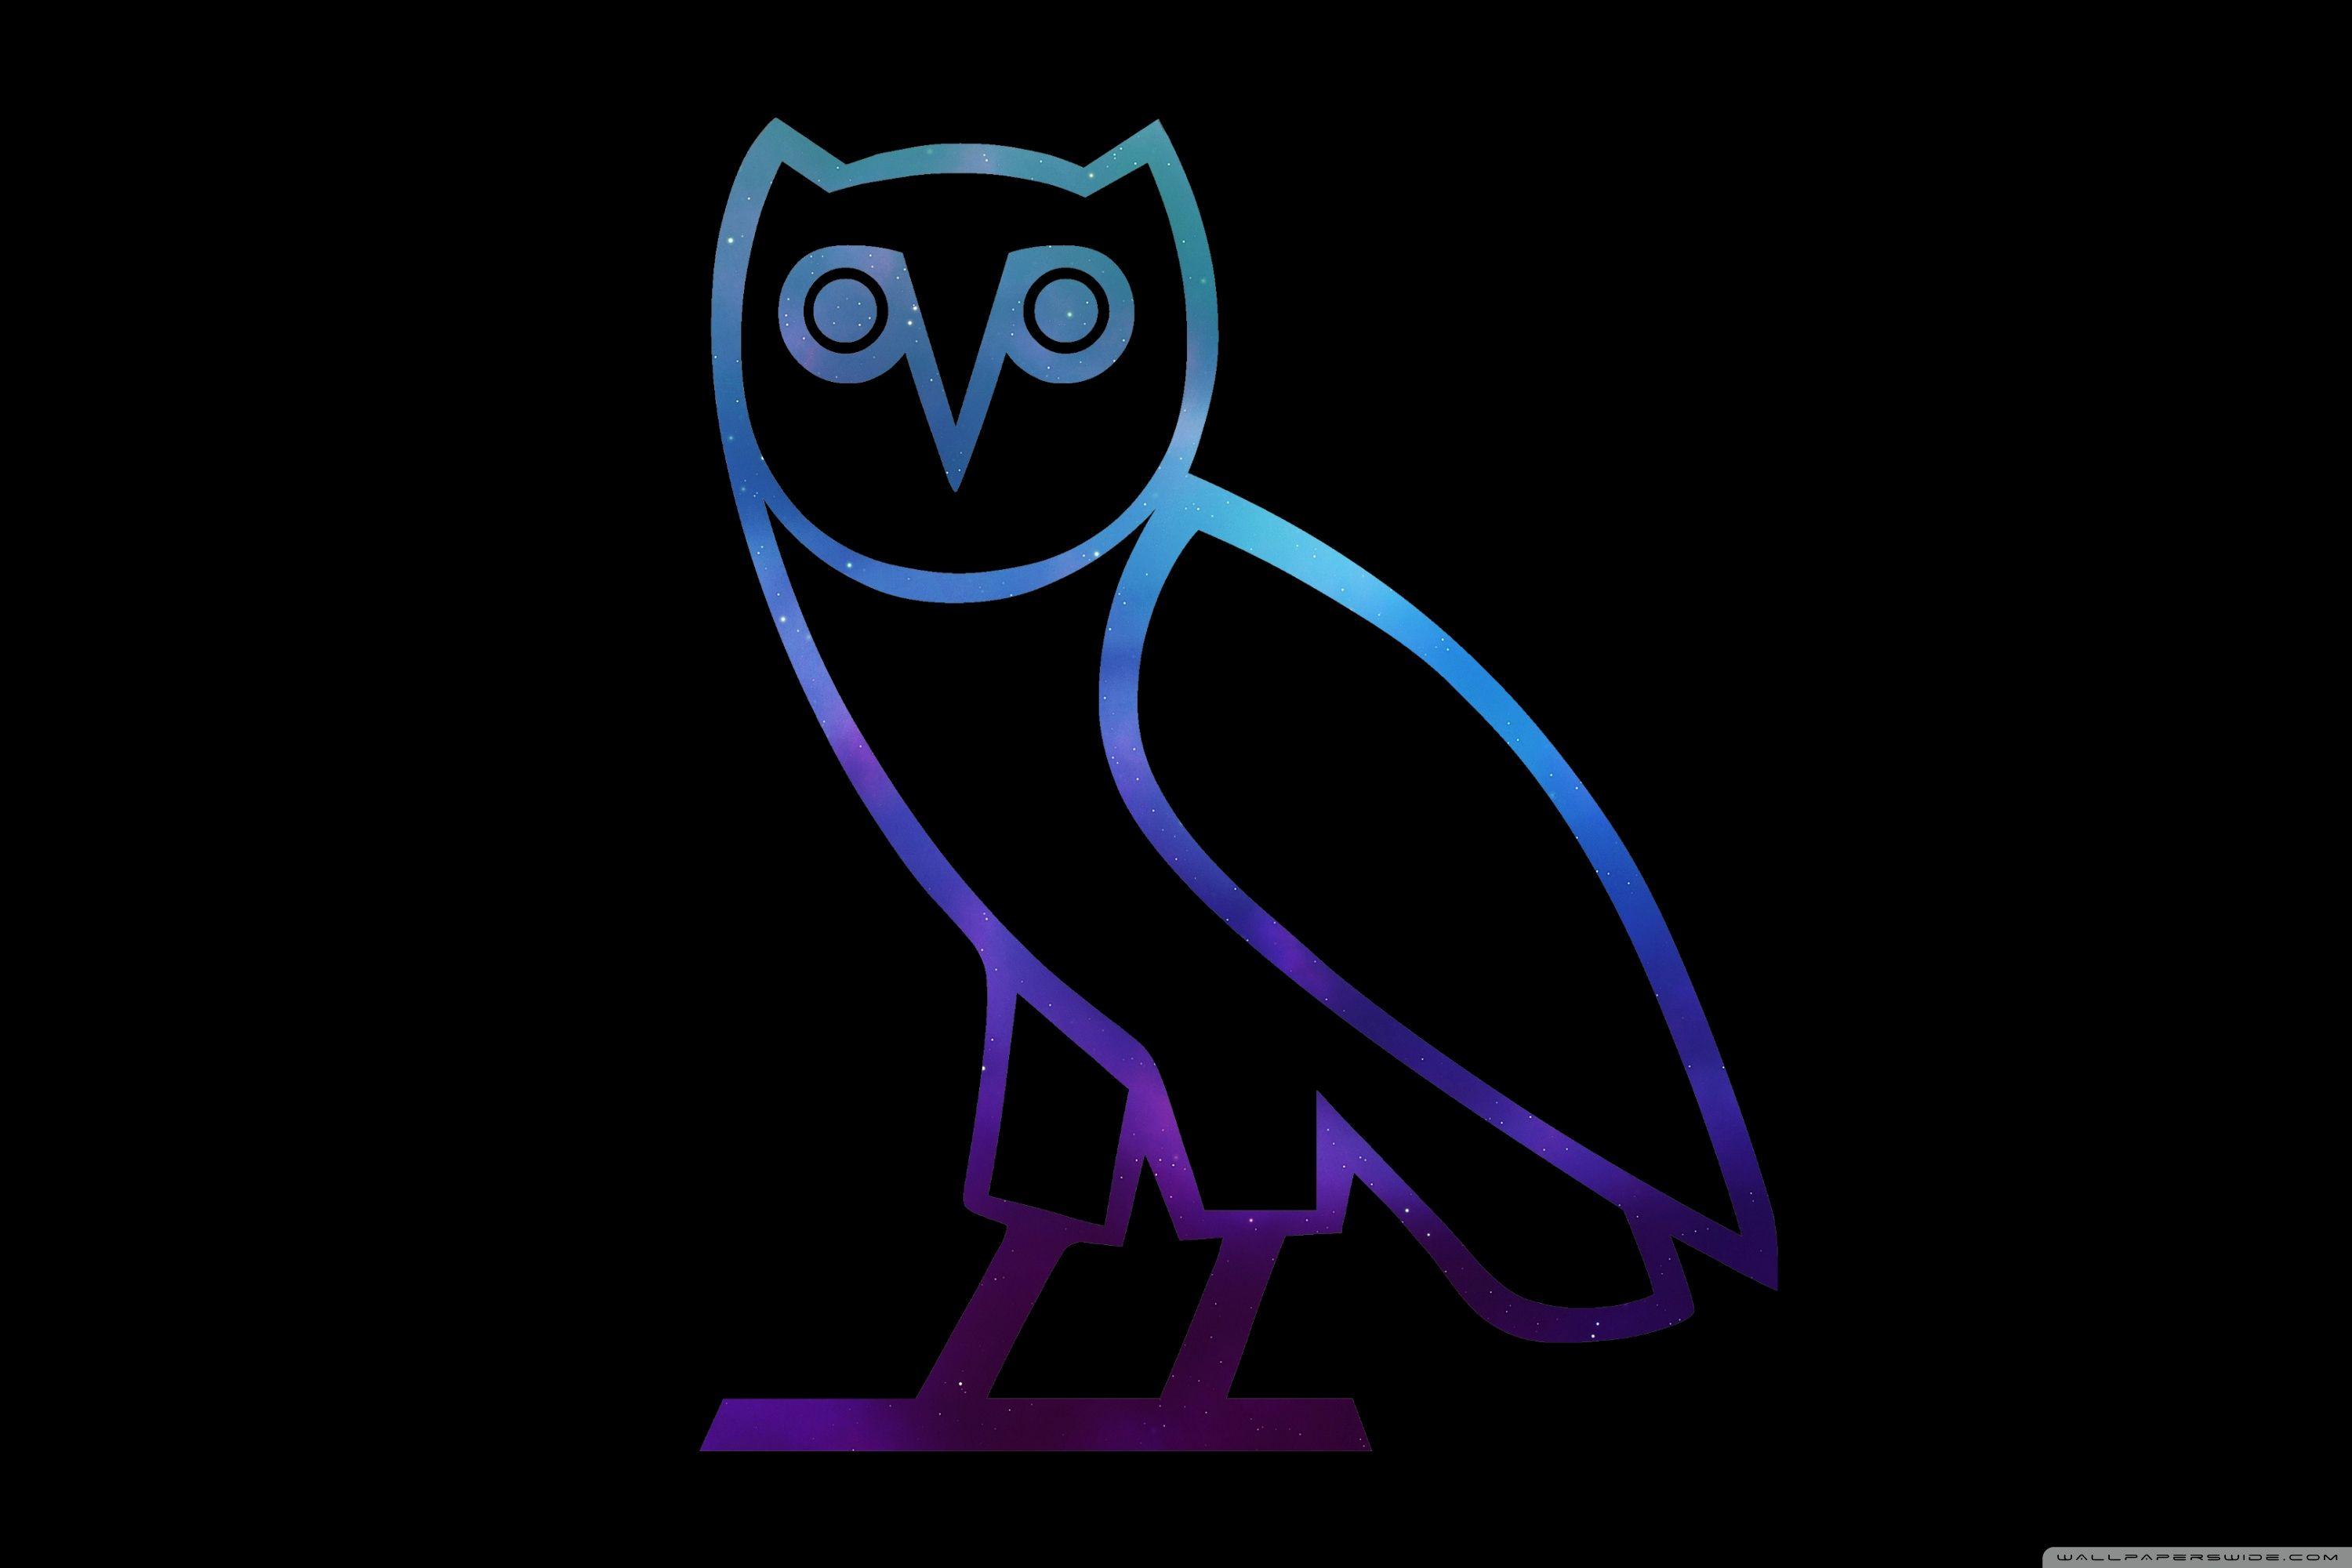 Drake OVO Owl iPhone Wallpapers - Top Free Drake OVO Owl iPhone Backgrounds  - WallpaperAccess